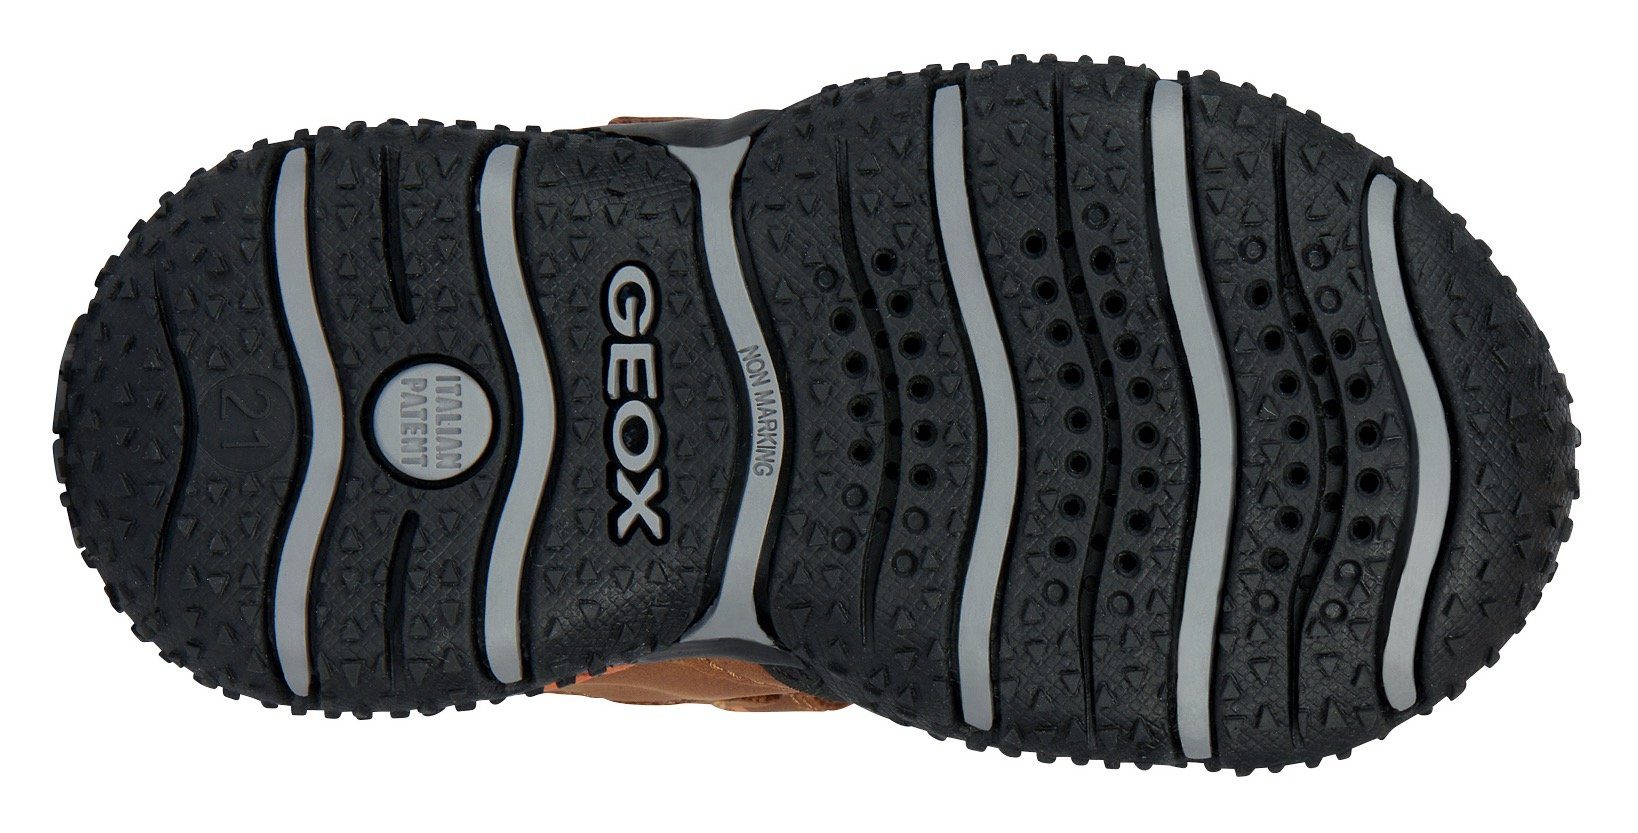 B BOY braun-schwarz-orange Geox mit B ABX BALTIC TEX-Ausstattung Lauflernschuh